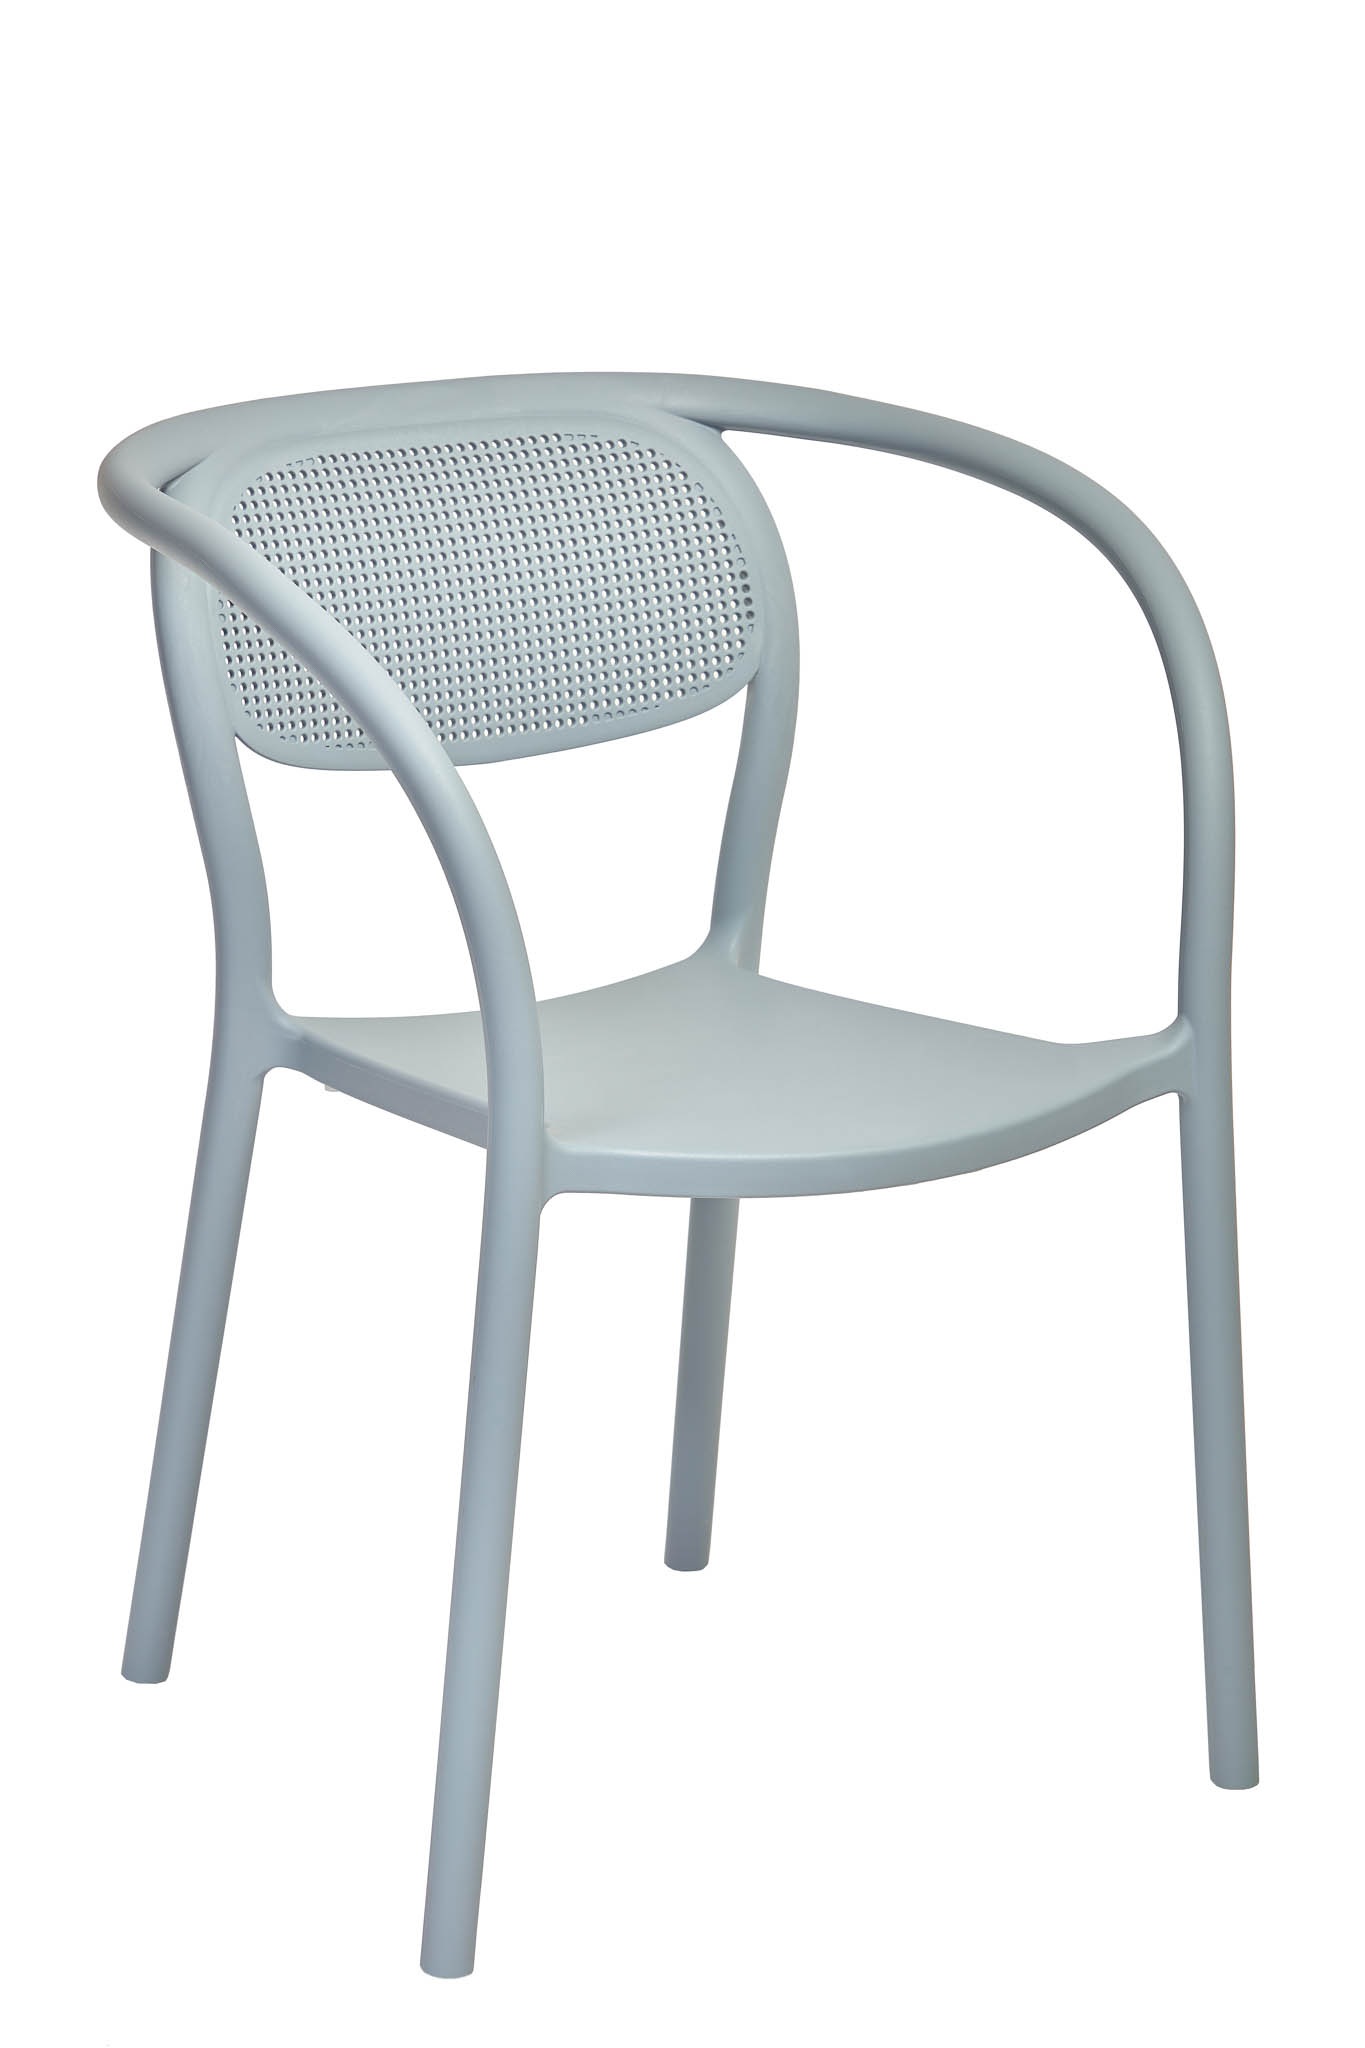 AD hotelska oprema Fotelja 02 - Blue grey boje slika proizvoda